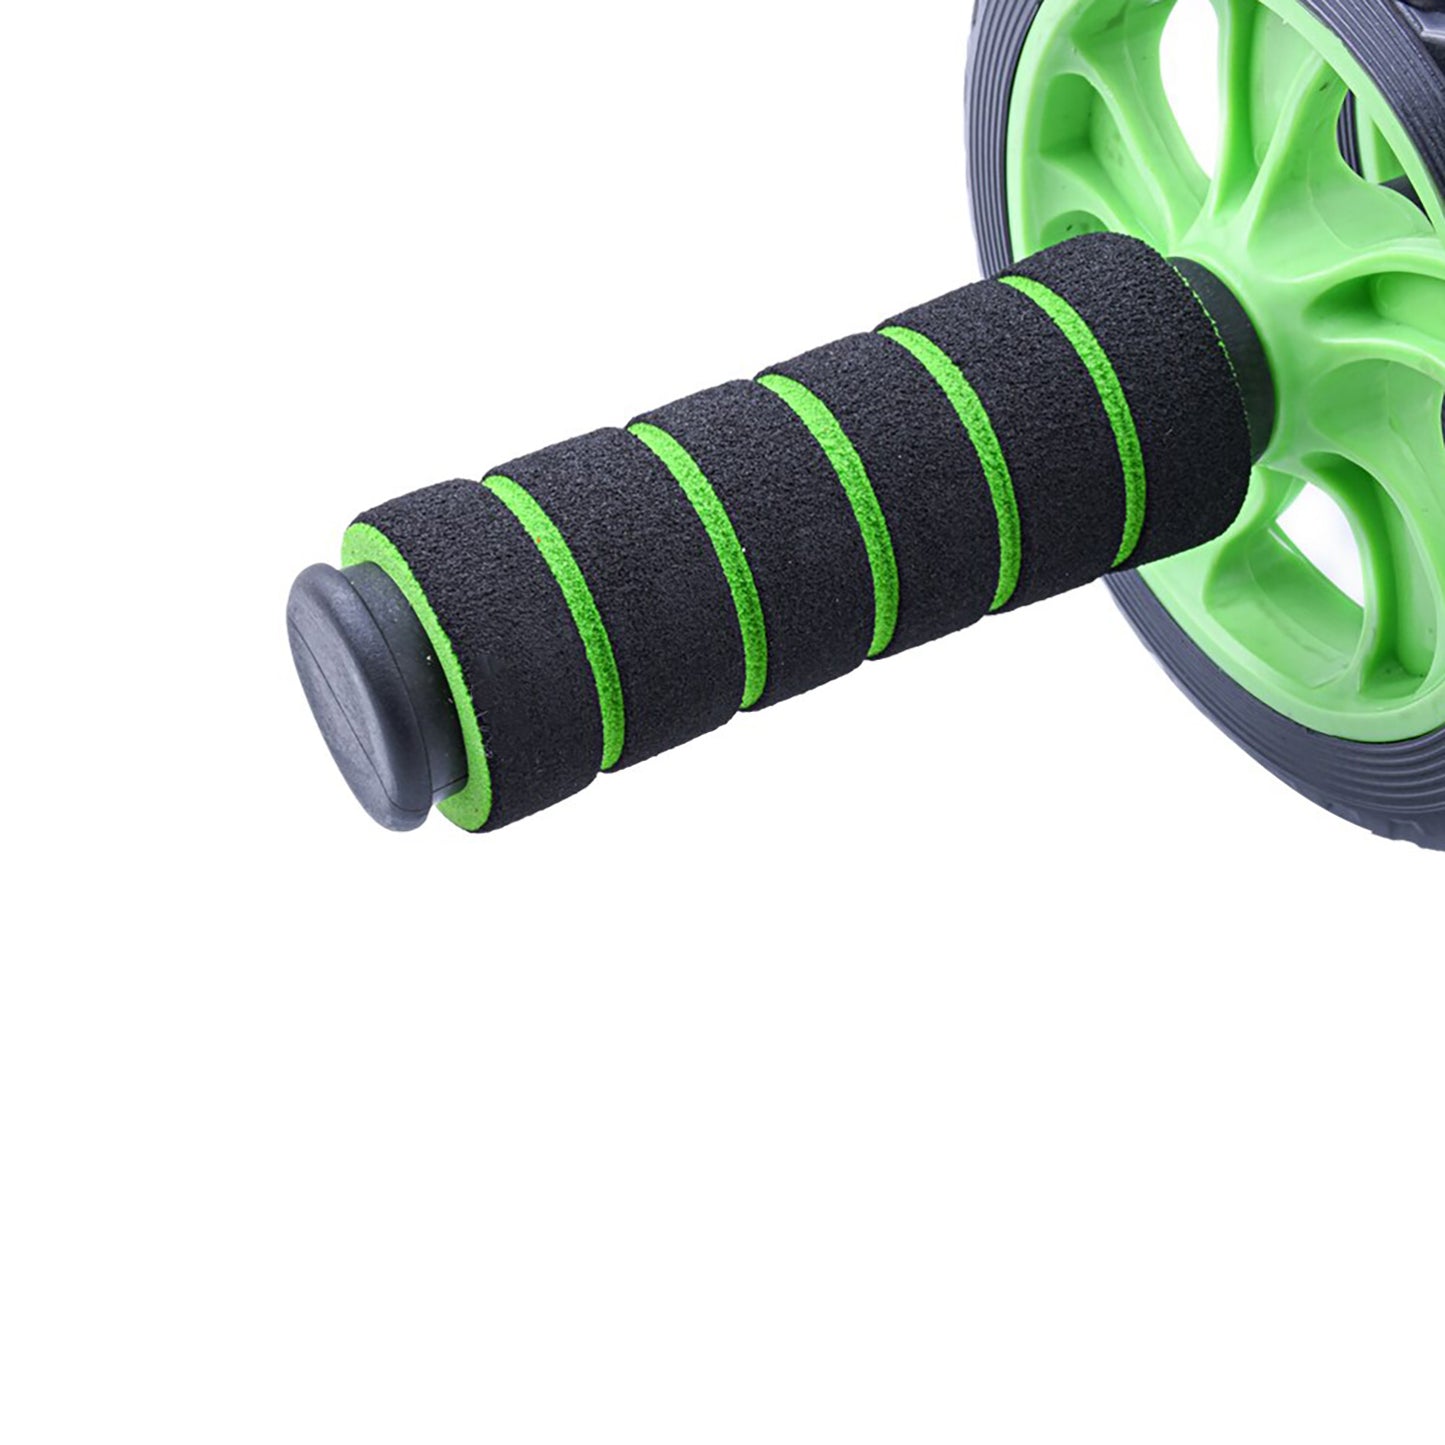 عجلة تمارين عضلات البطن - يد فوم - لون اخضر